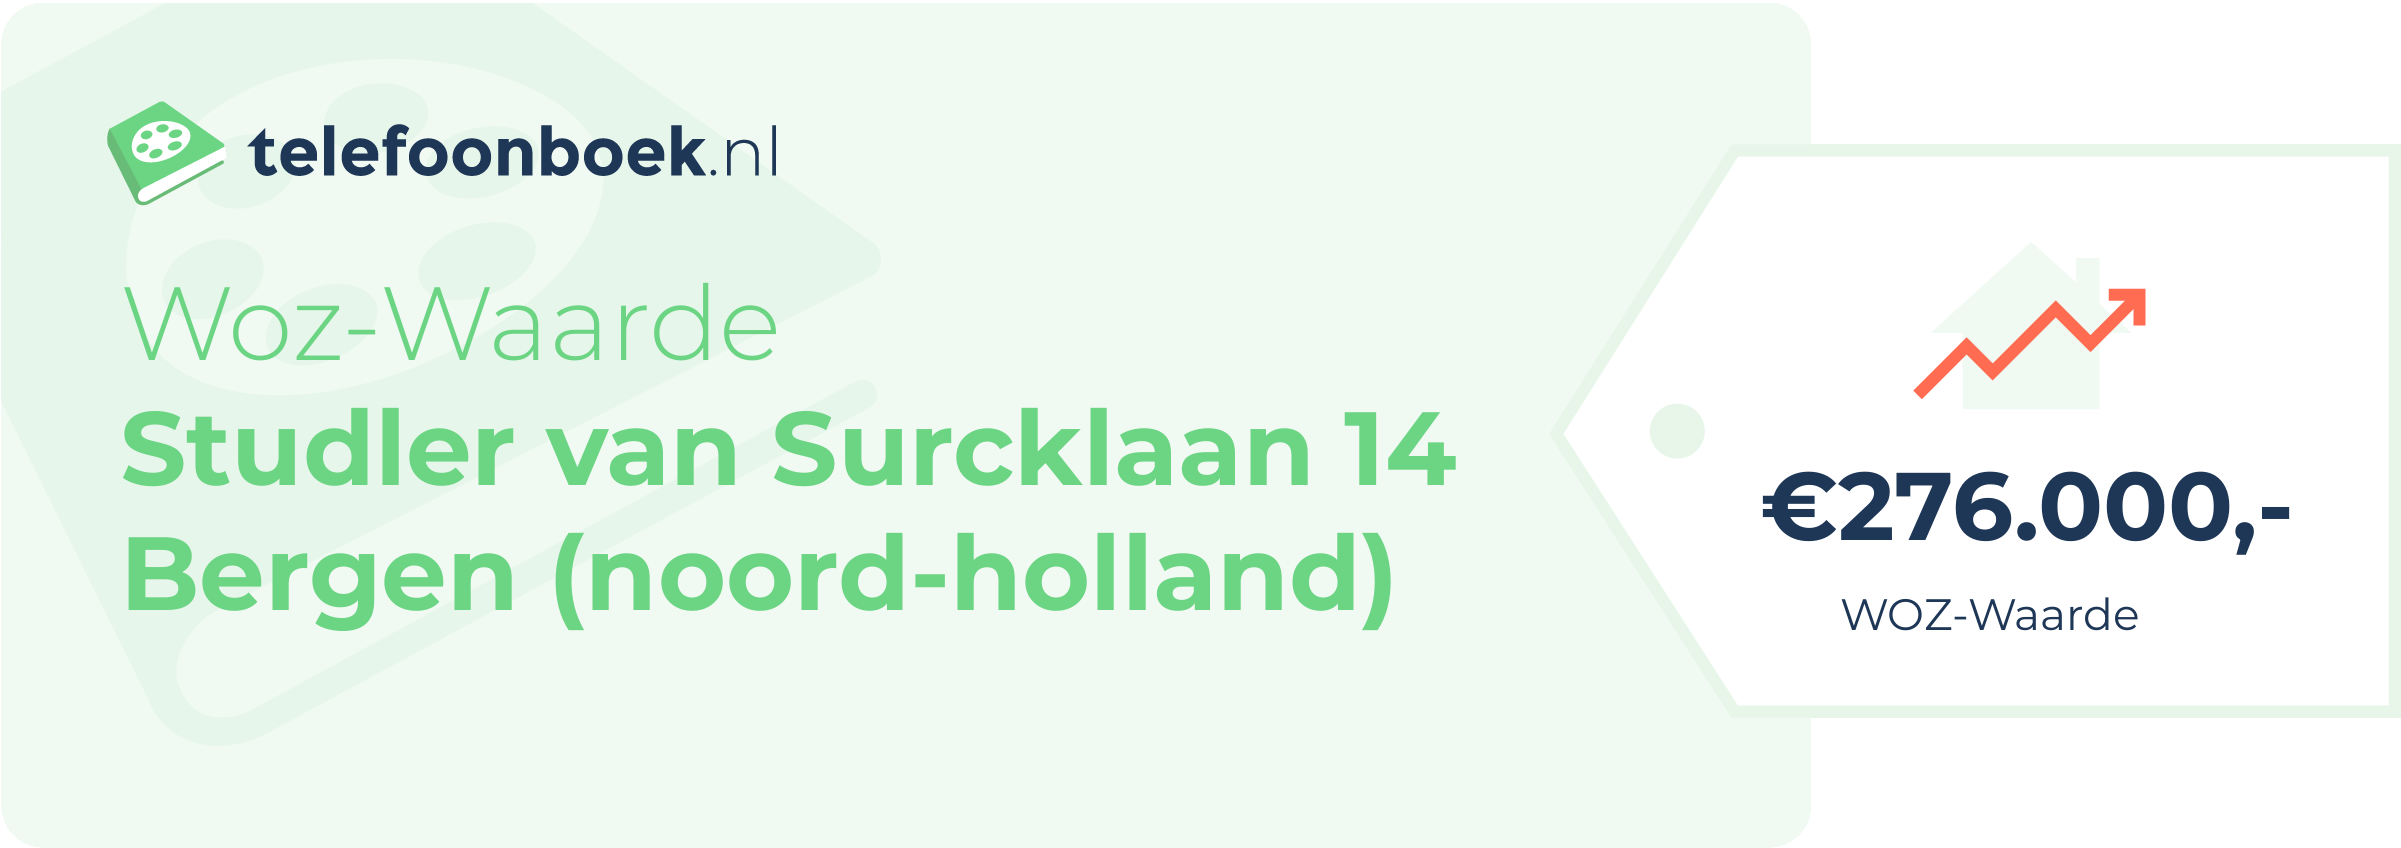 WOZ-waarde Studler Van Surcklaan 14 Bergen (Noord-Holland)